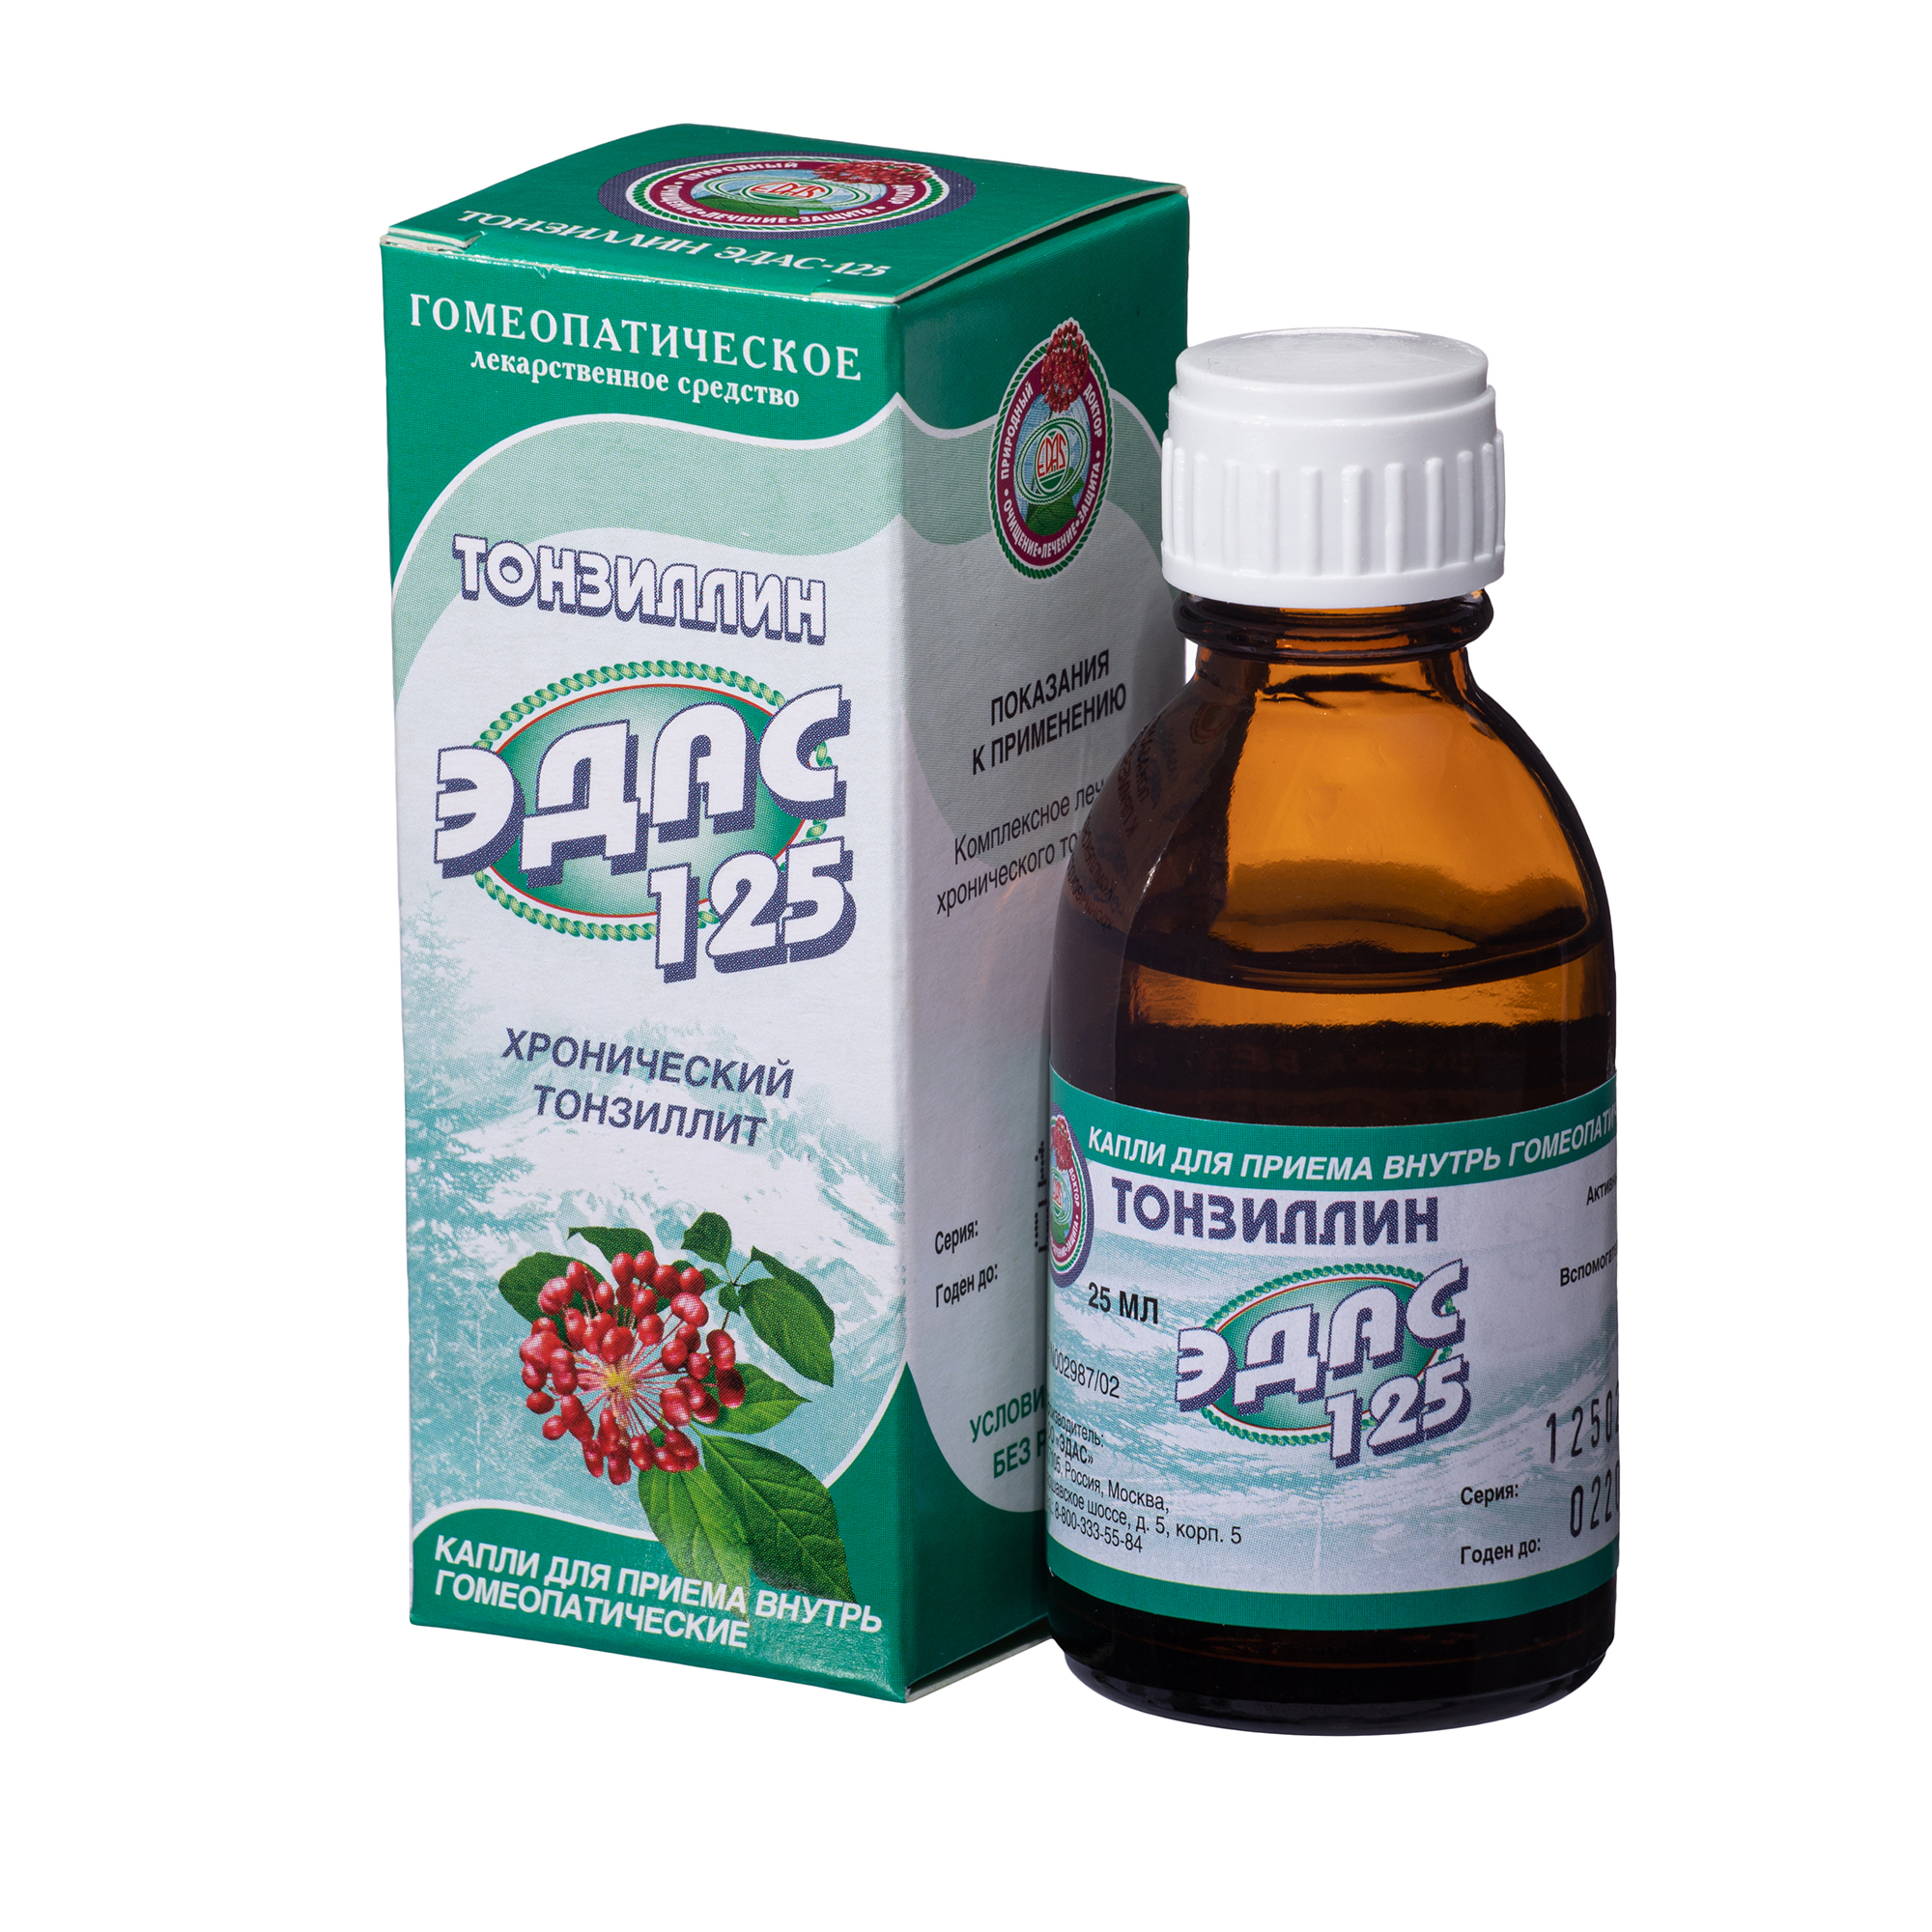 Тонзиллин Эдас-125, для лечения хронического тонзиллита, капли гом. 25 мл